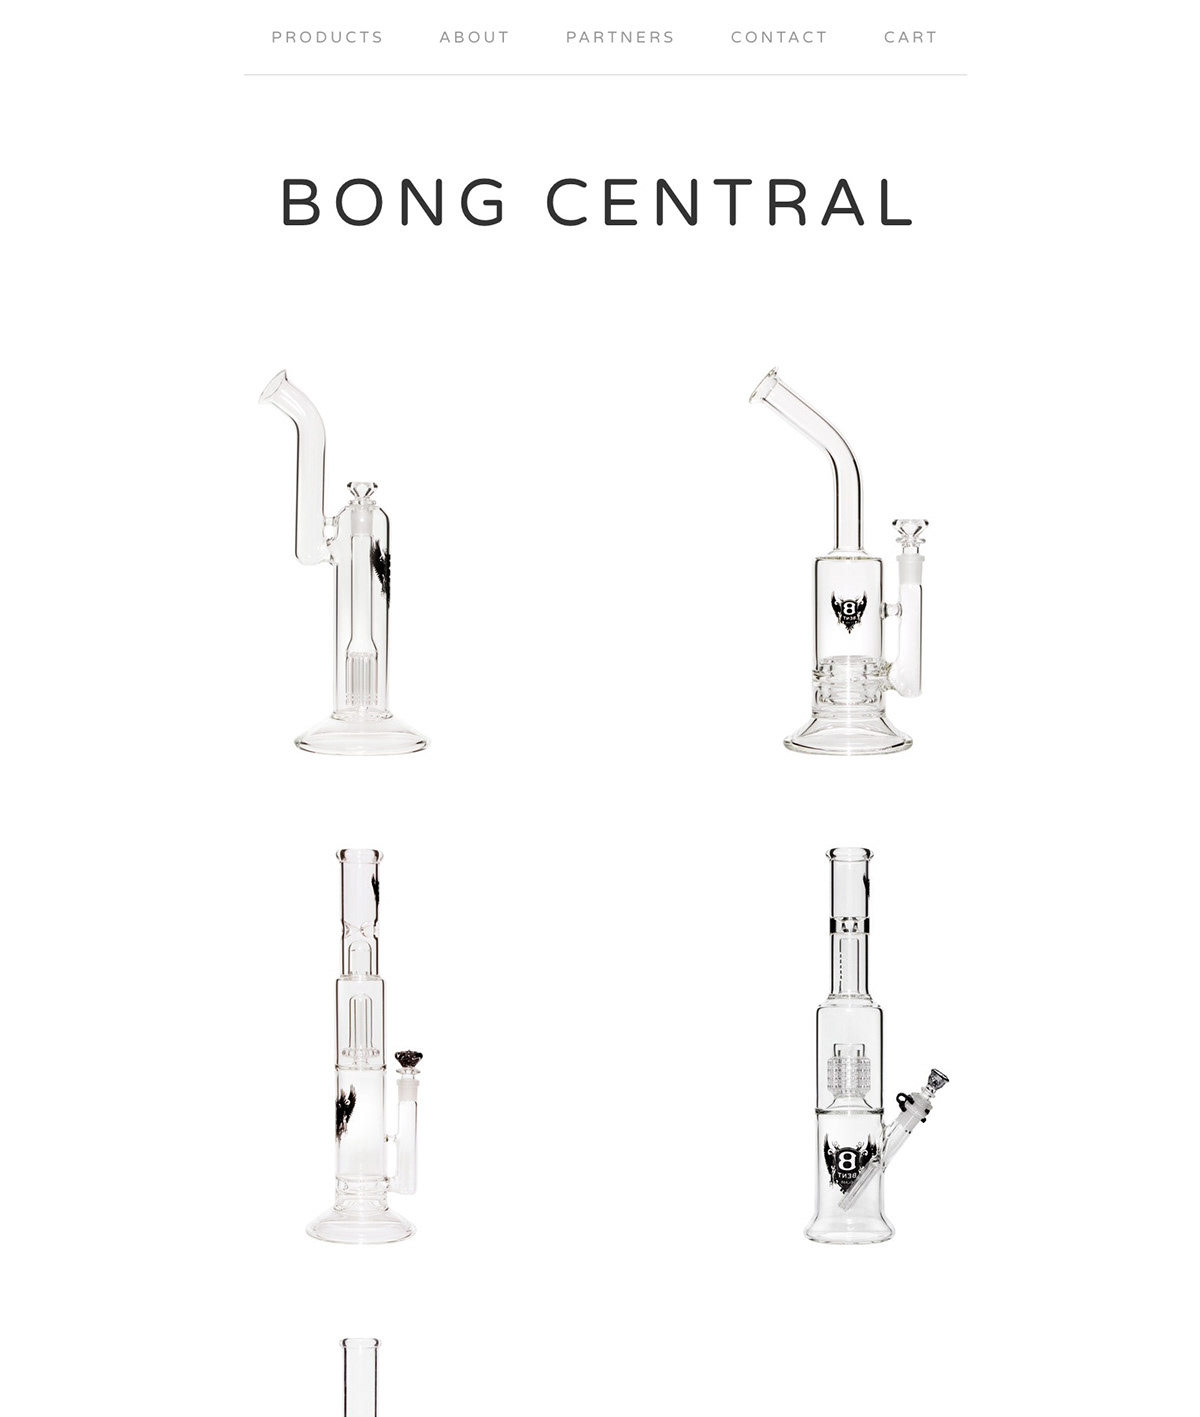 glass bongs big cartel Bong Central bent glass